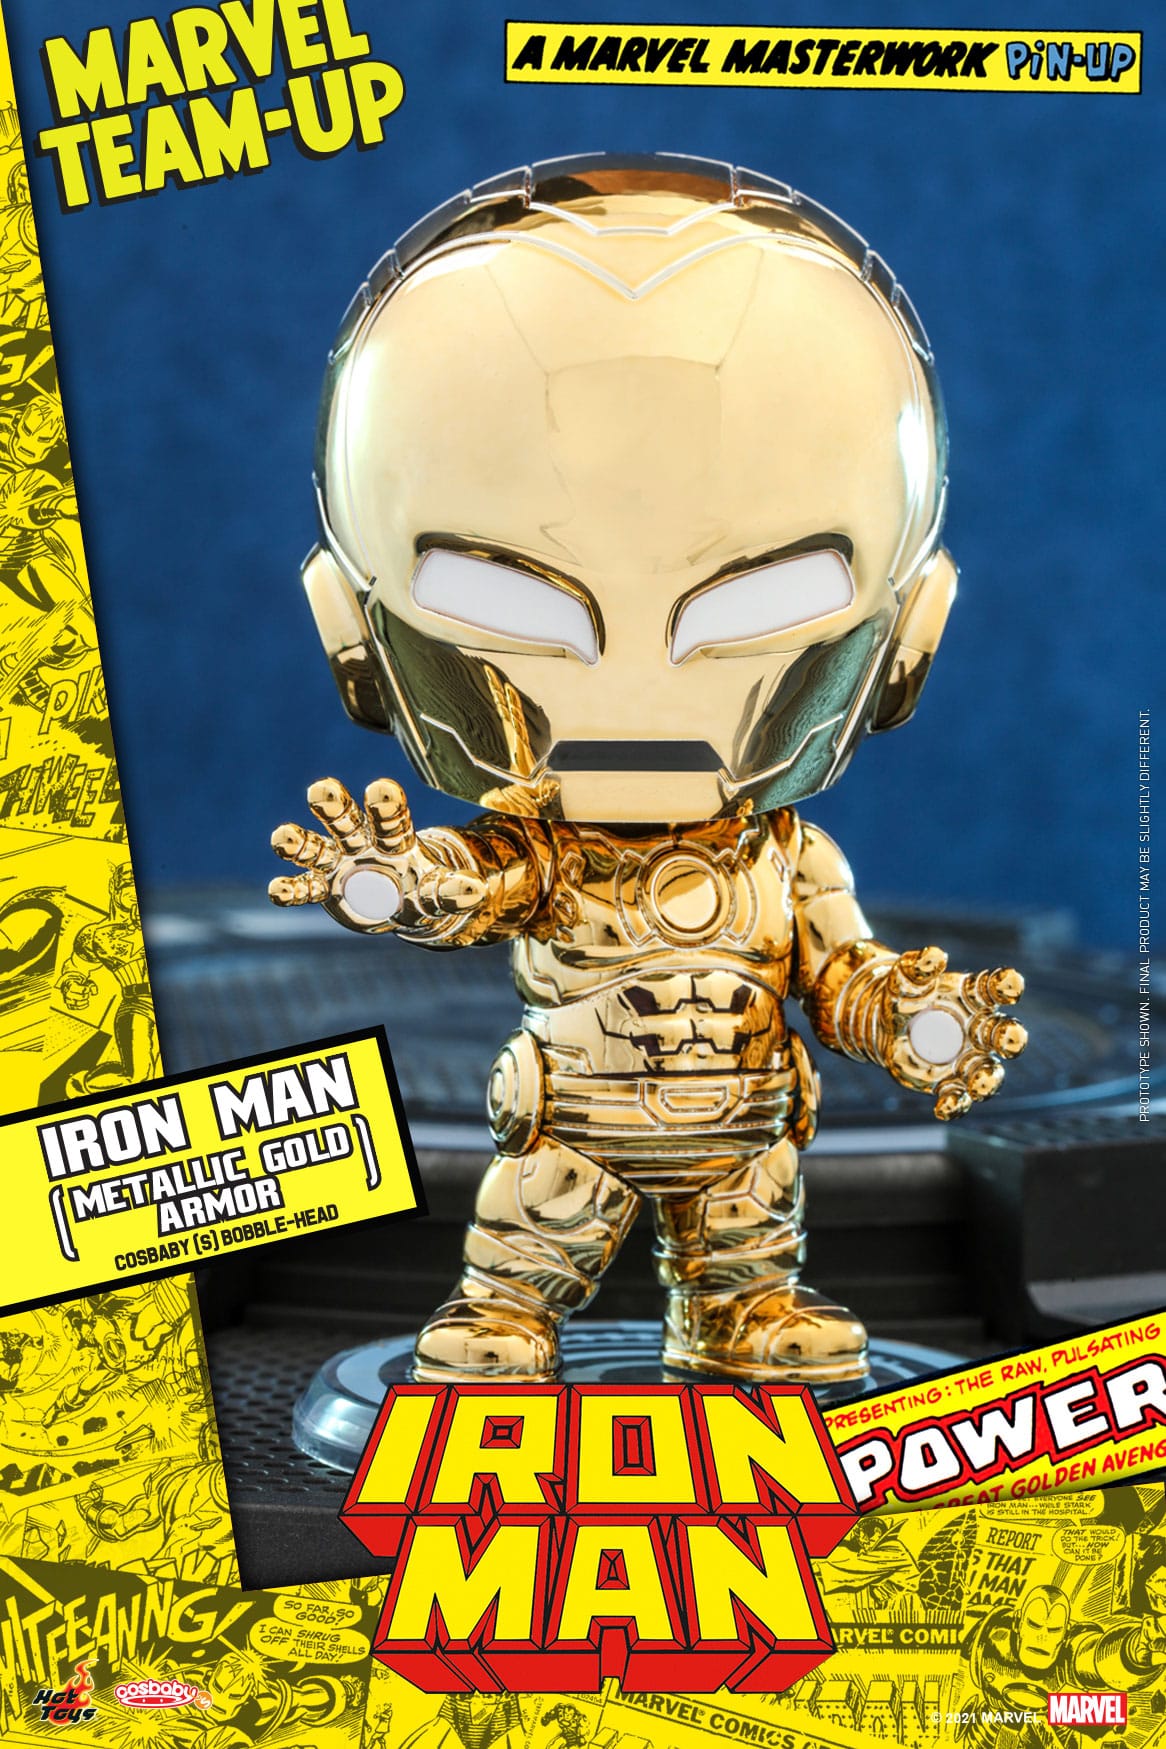 Iron Man (armadura de oro metálico) Cosbaby